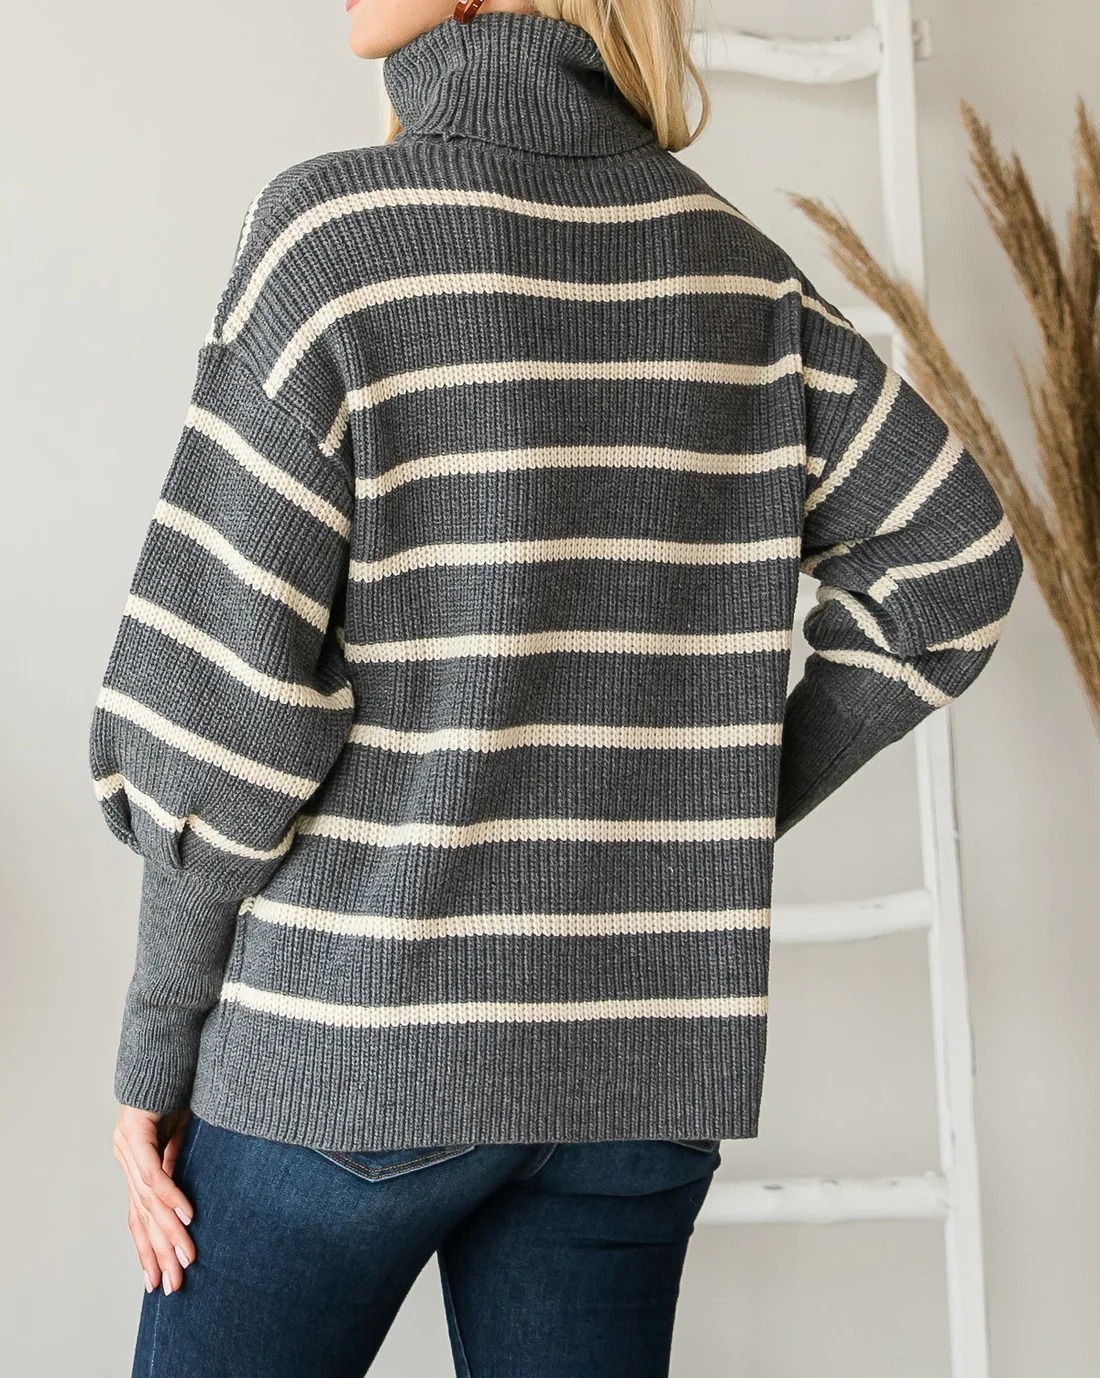 Yazona Women's Heavy Knit Striped Turtle Neck Knit Sweater